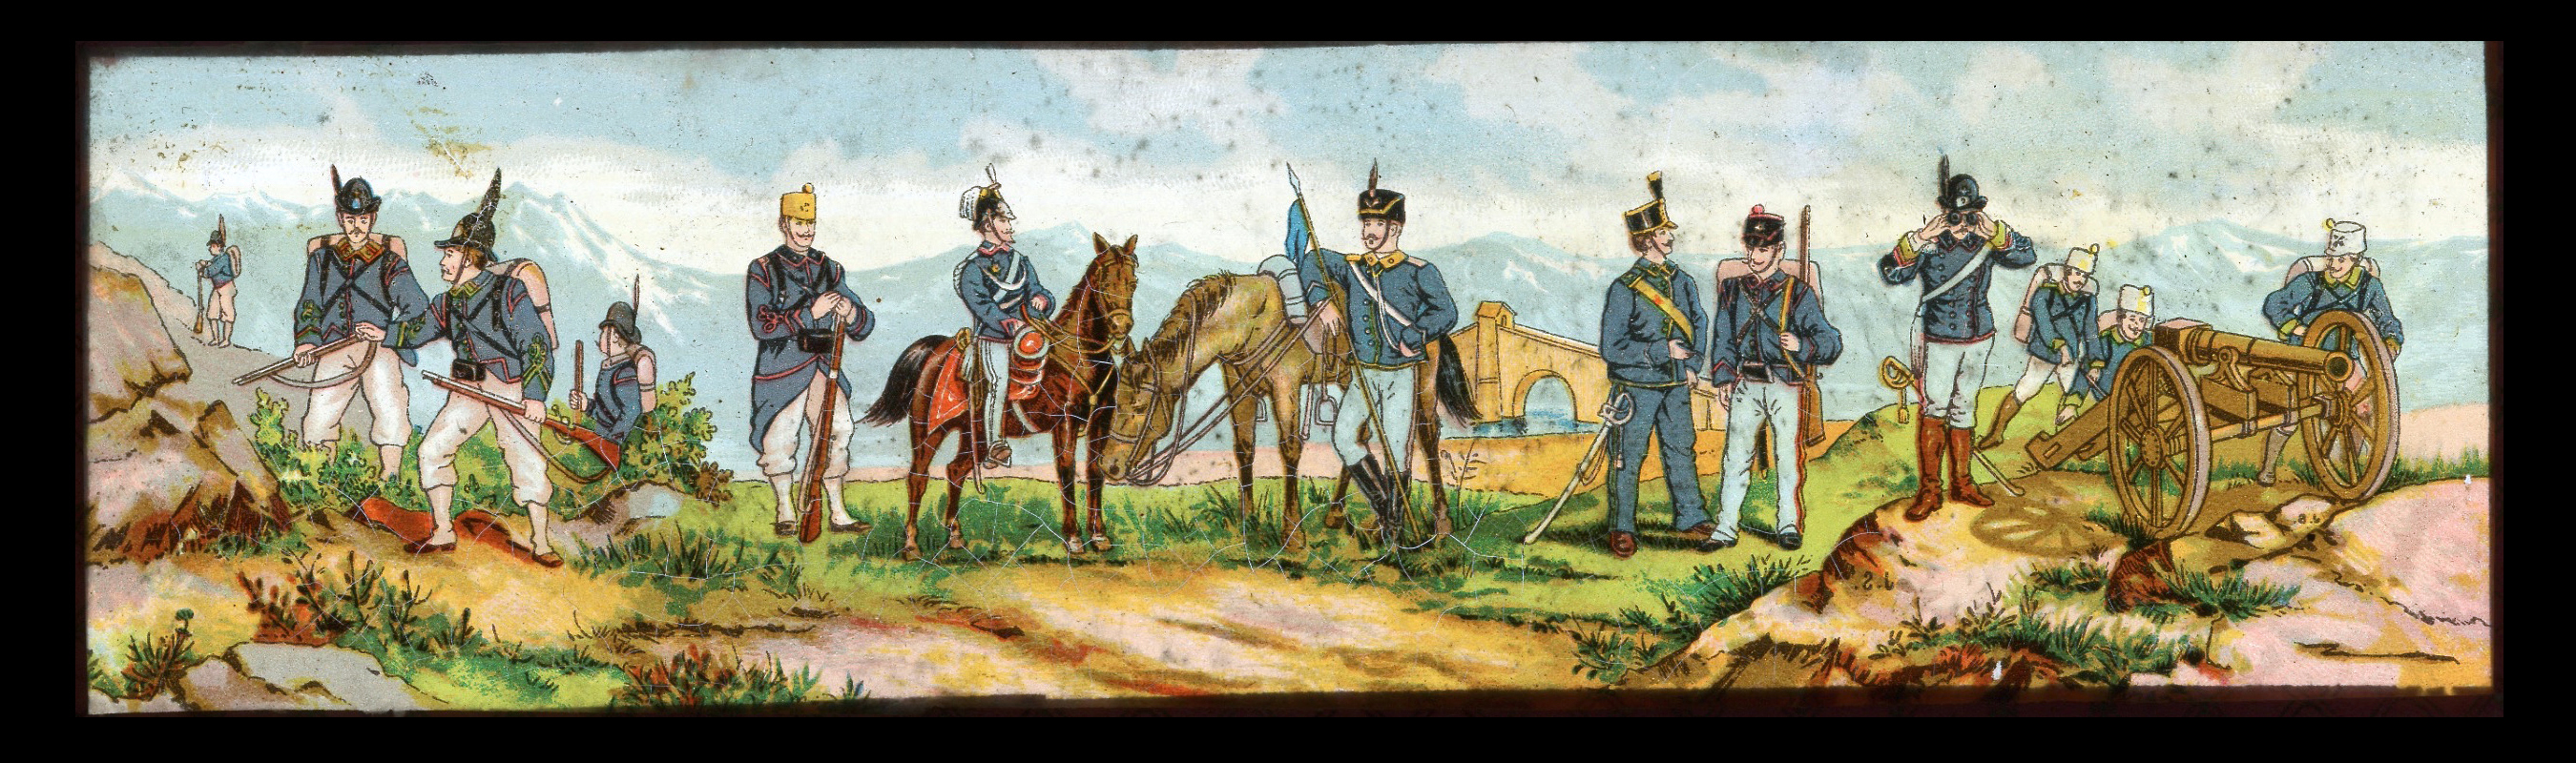 6 plaques de verre - Lanterne magique - XIX - Mes Armées Européennes XIX - Prusse - Angleterre - Italie - En campagne - Uniforme